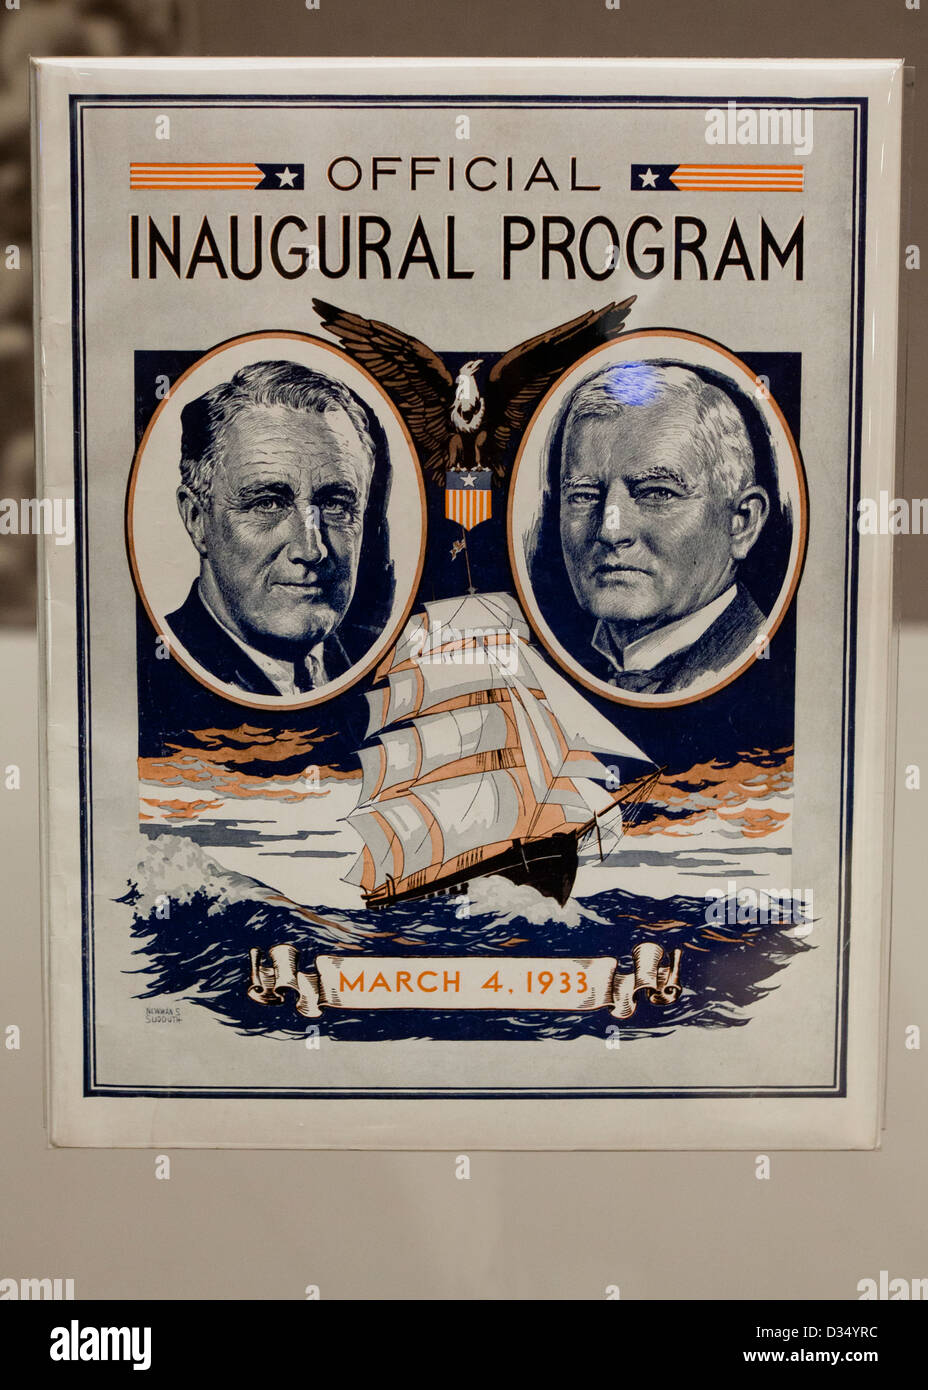 Roosevelt y Garner programa de Inauguración oficial Foto de stock